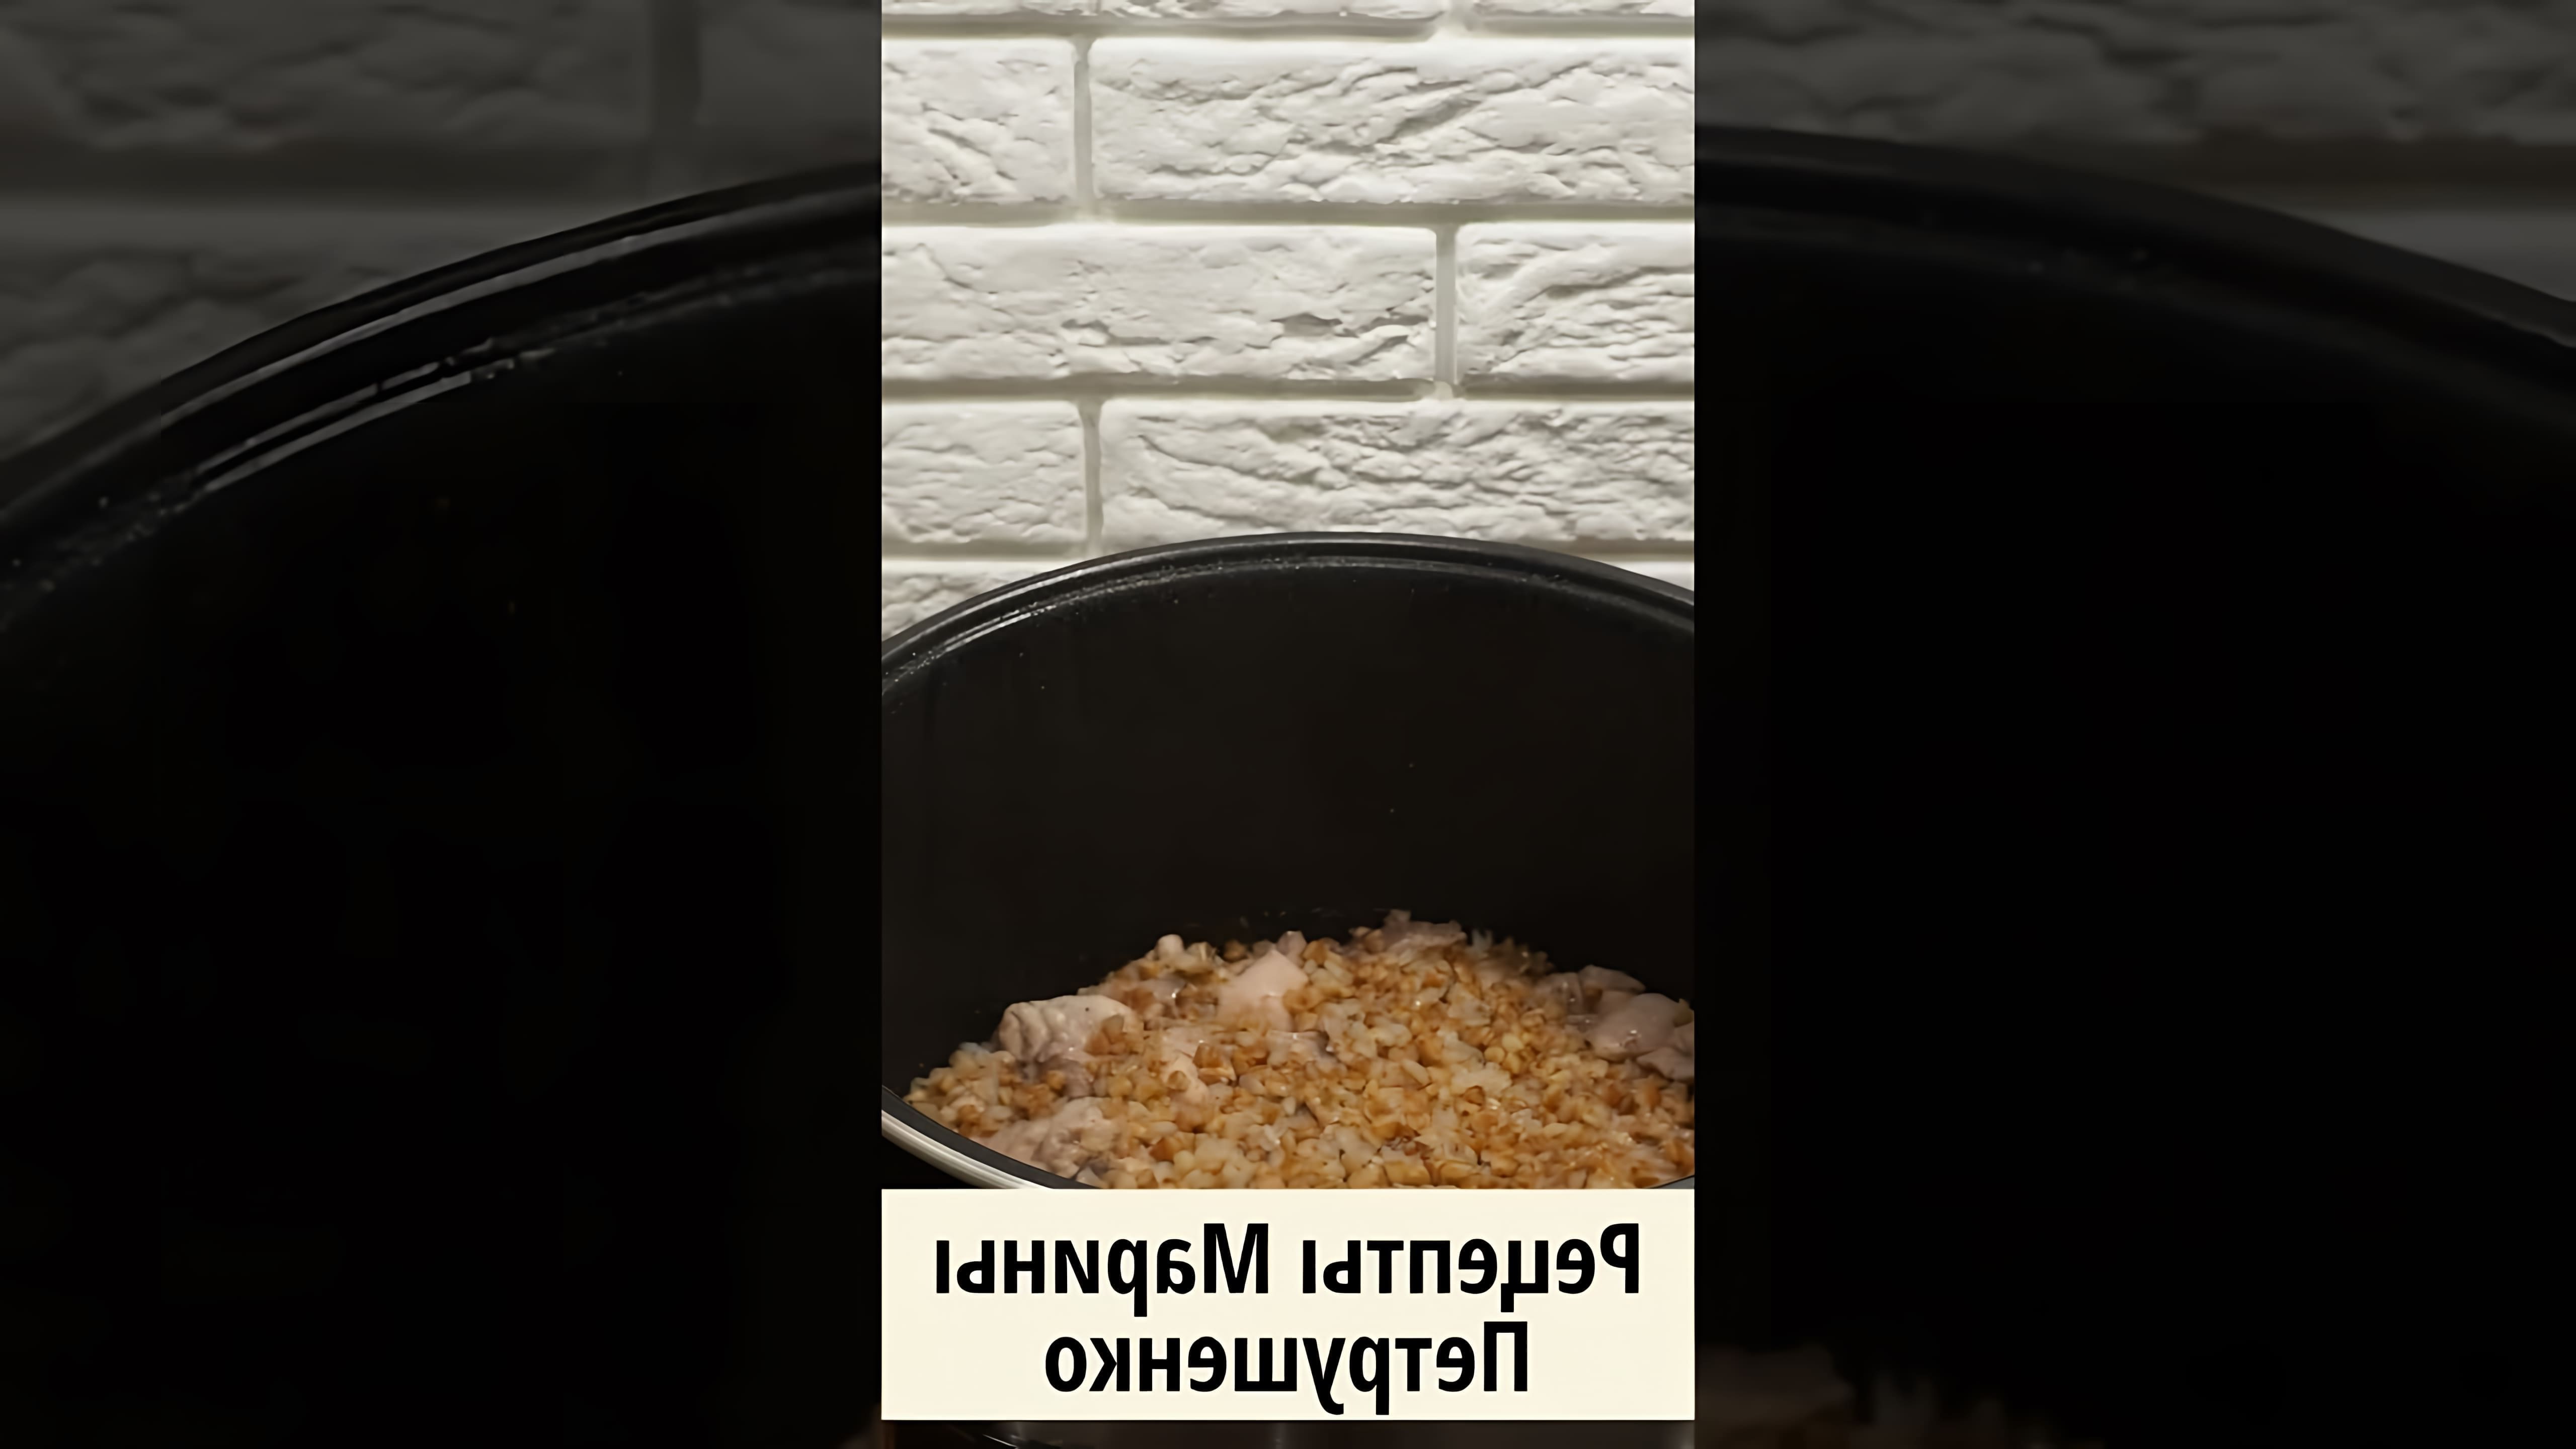 В этом видео демонстрируется процесс приготовления вкусной гречки с курицей в мультиварке